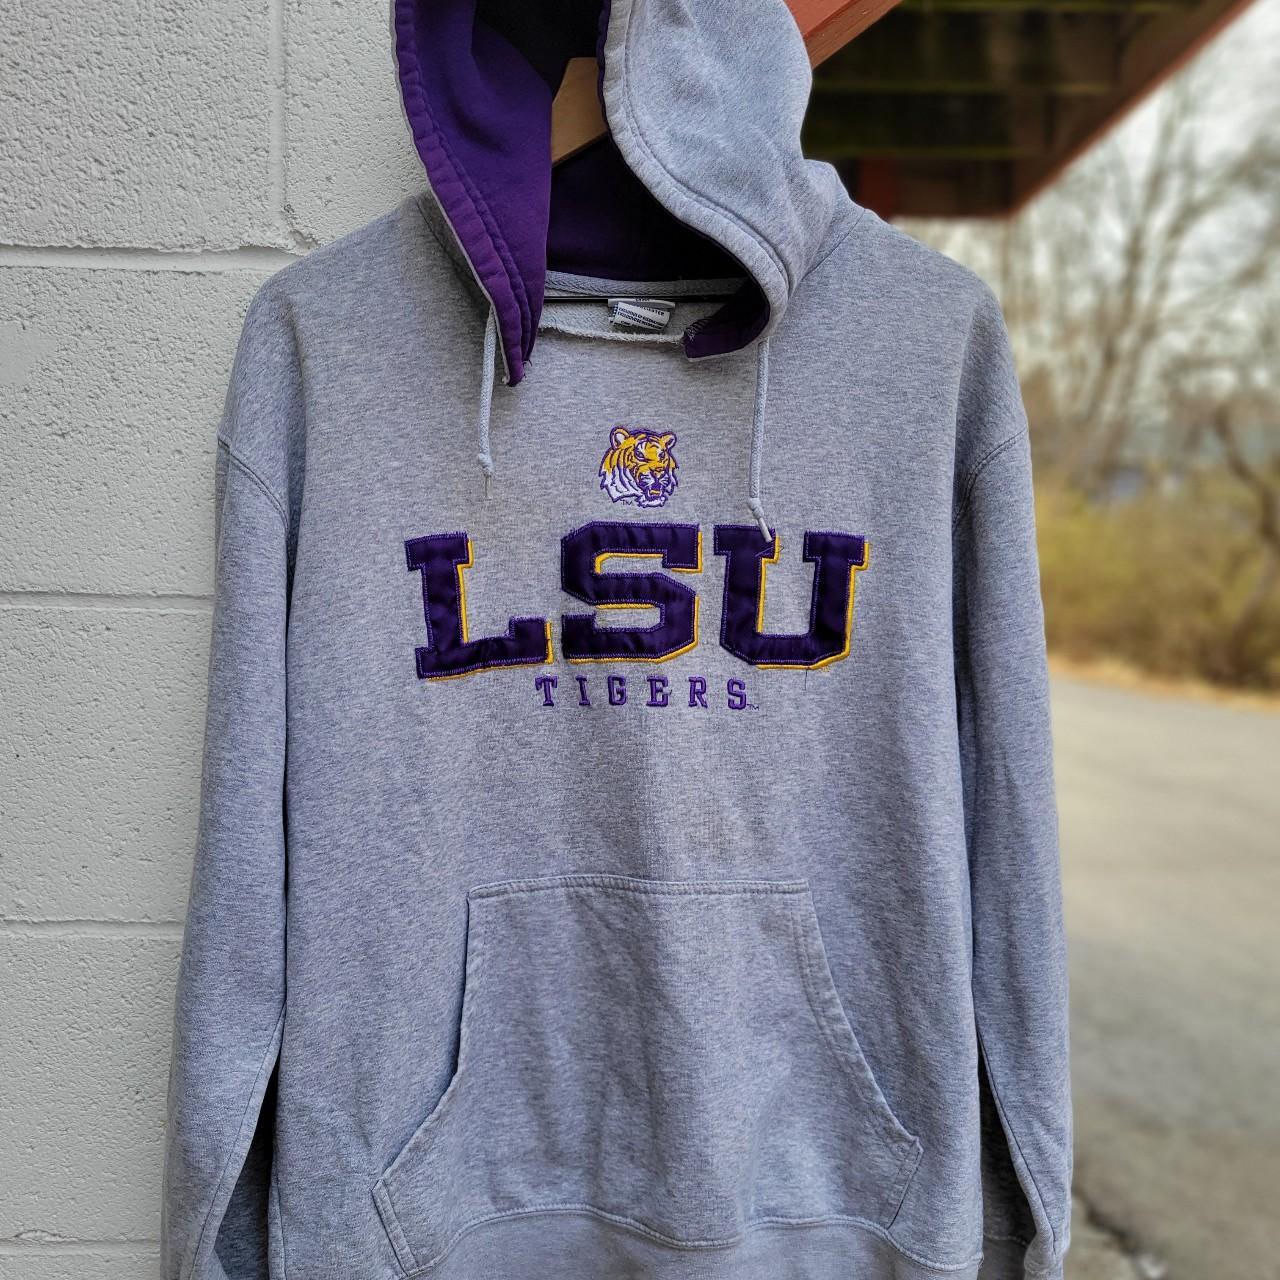 Vintage 00s LSU Tigers hoodie. Super sick grey and